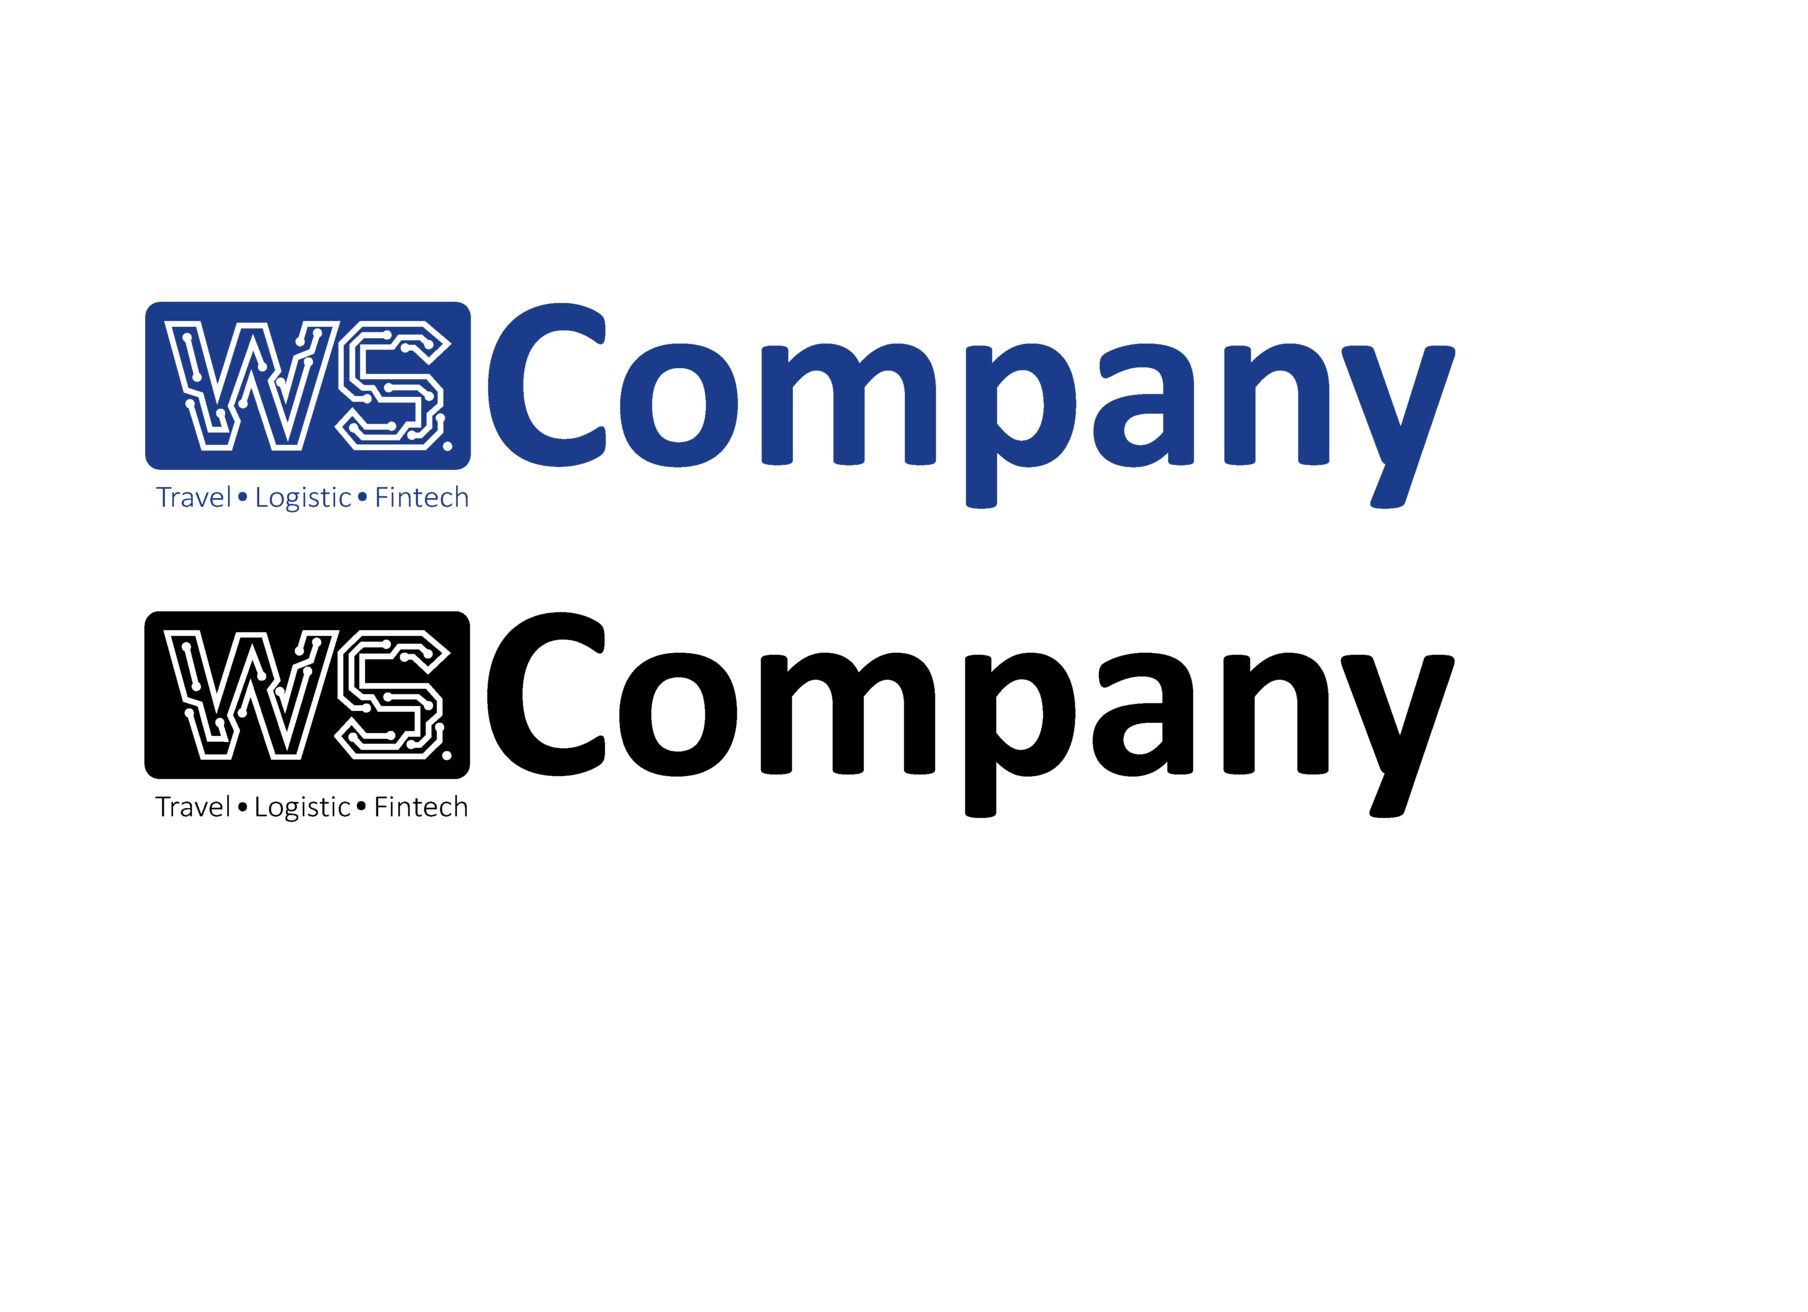 Логотип для WS.Company — Travel - Logistic - Fintech - дизайнер Polenova_11